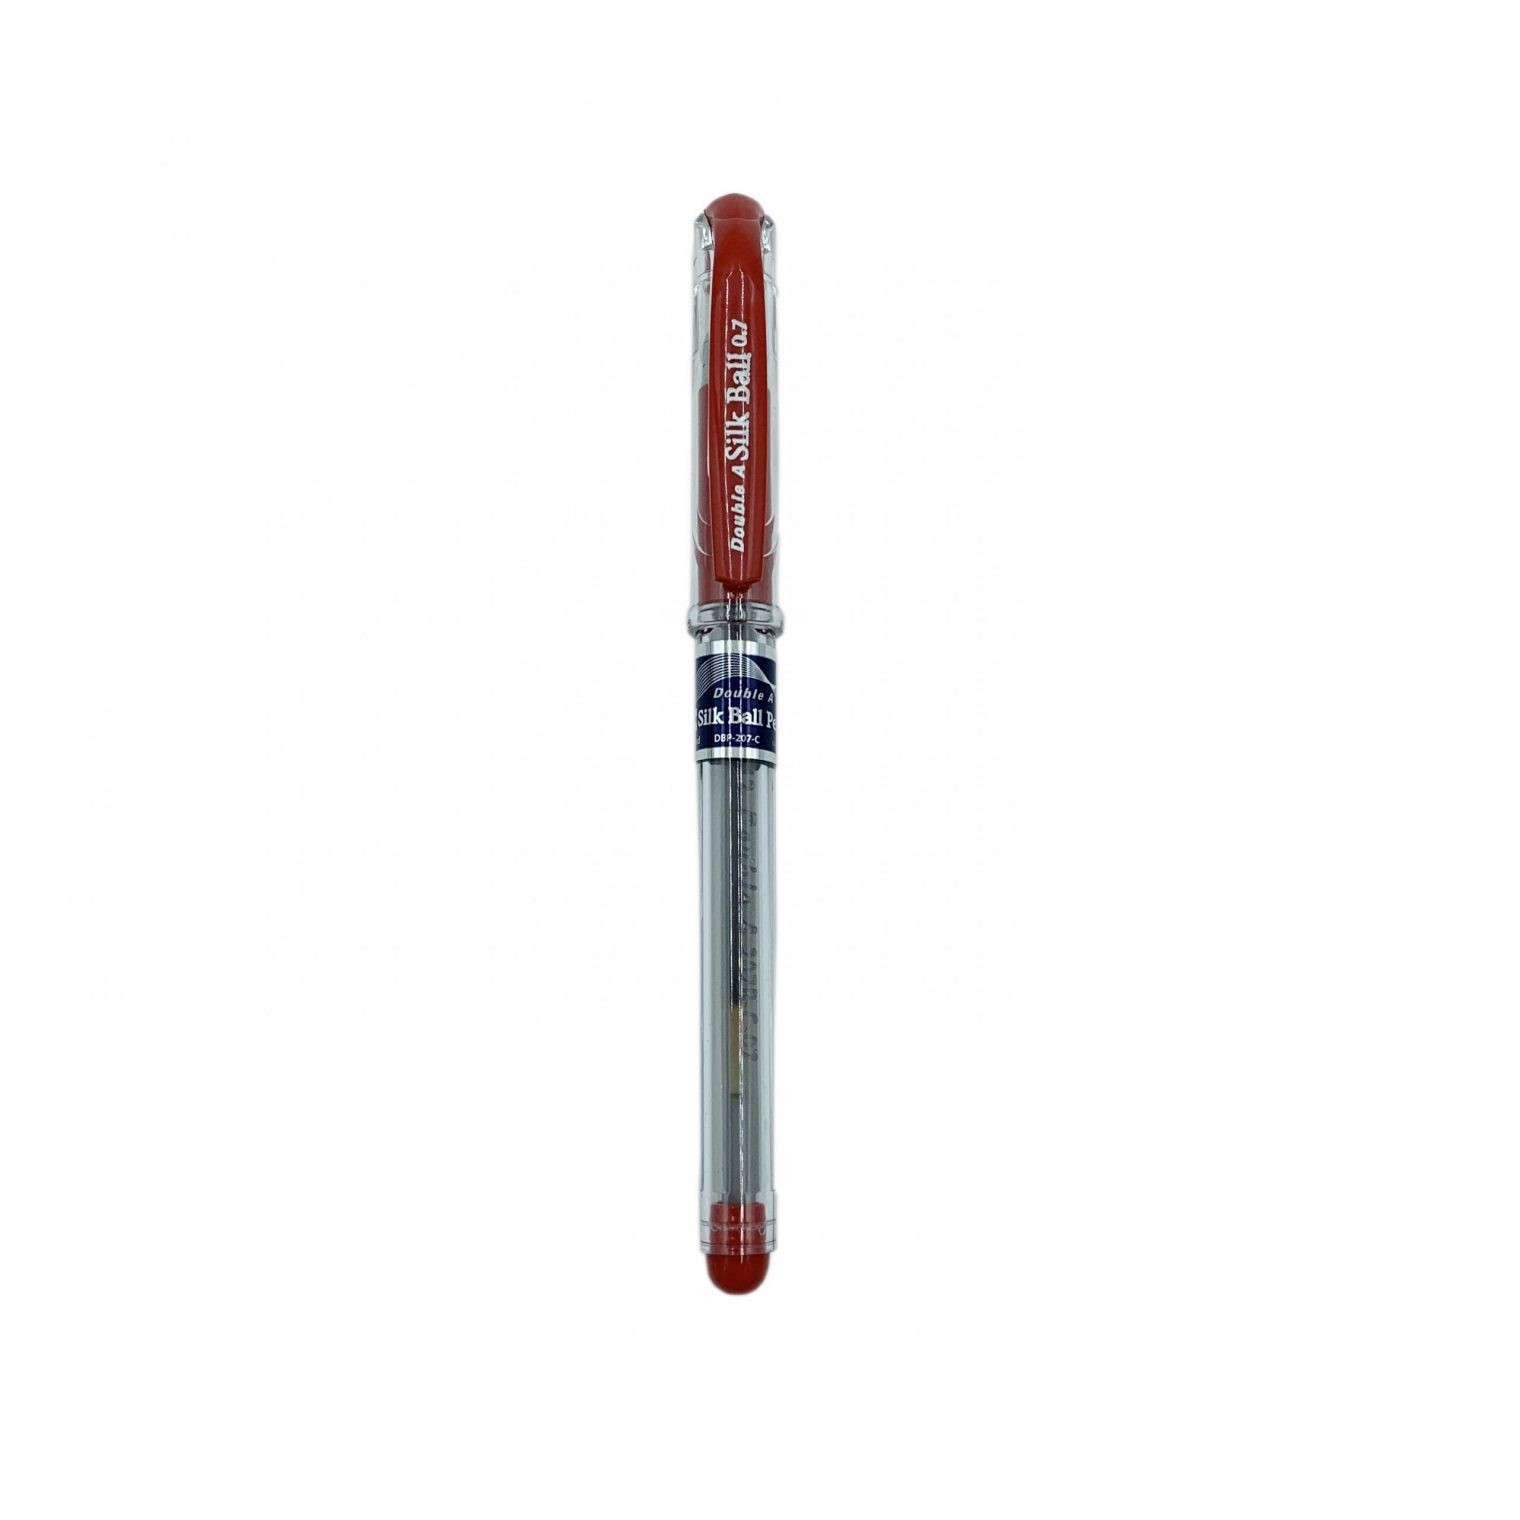 Bút Bi Silkball Double A Ngòi 0.7mm – Đỏ